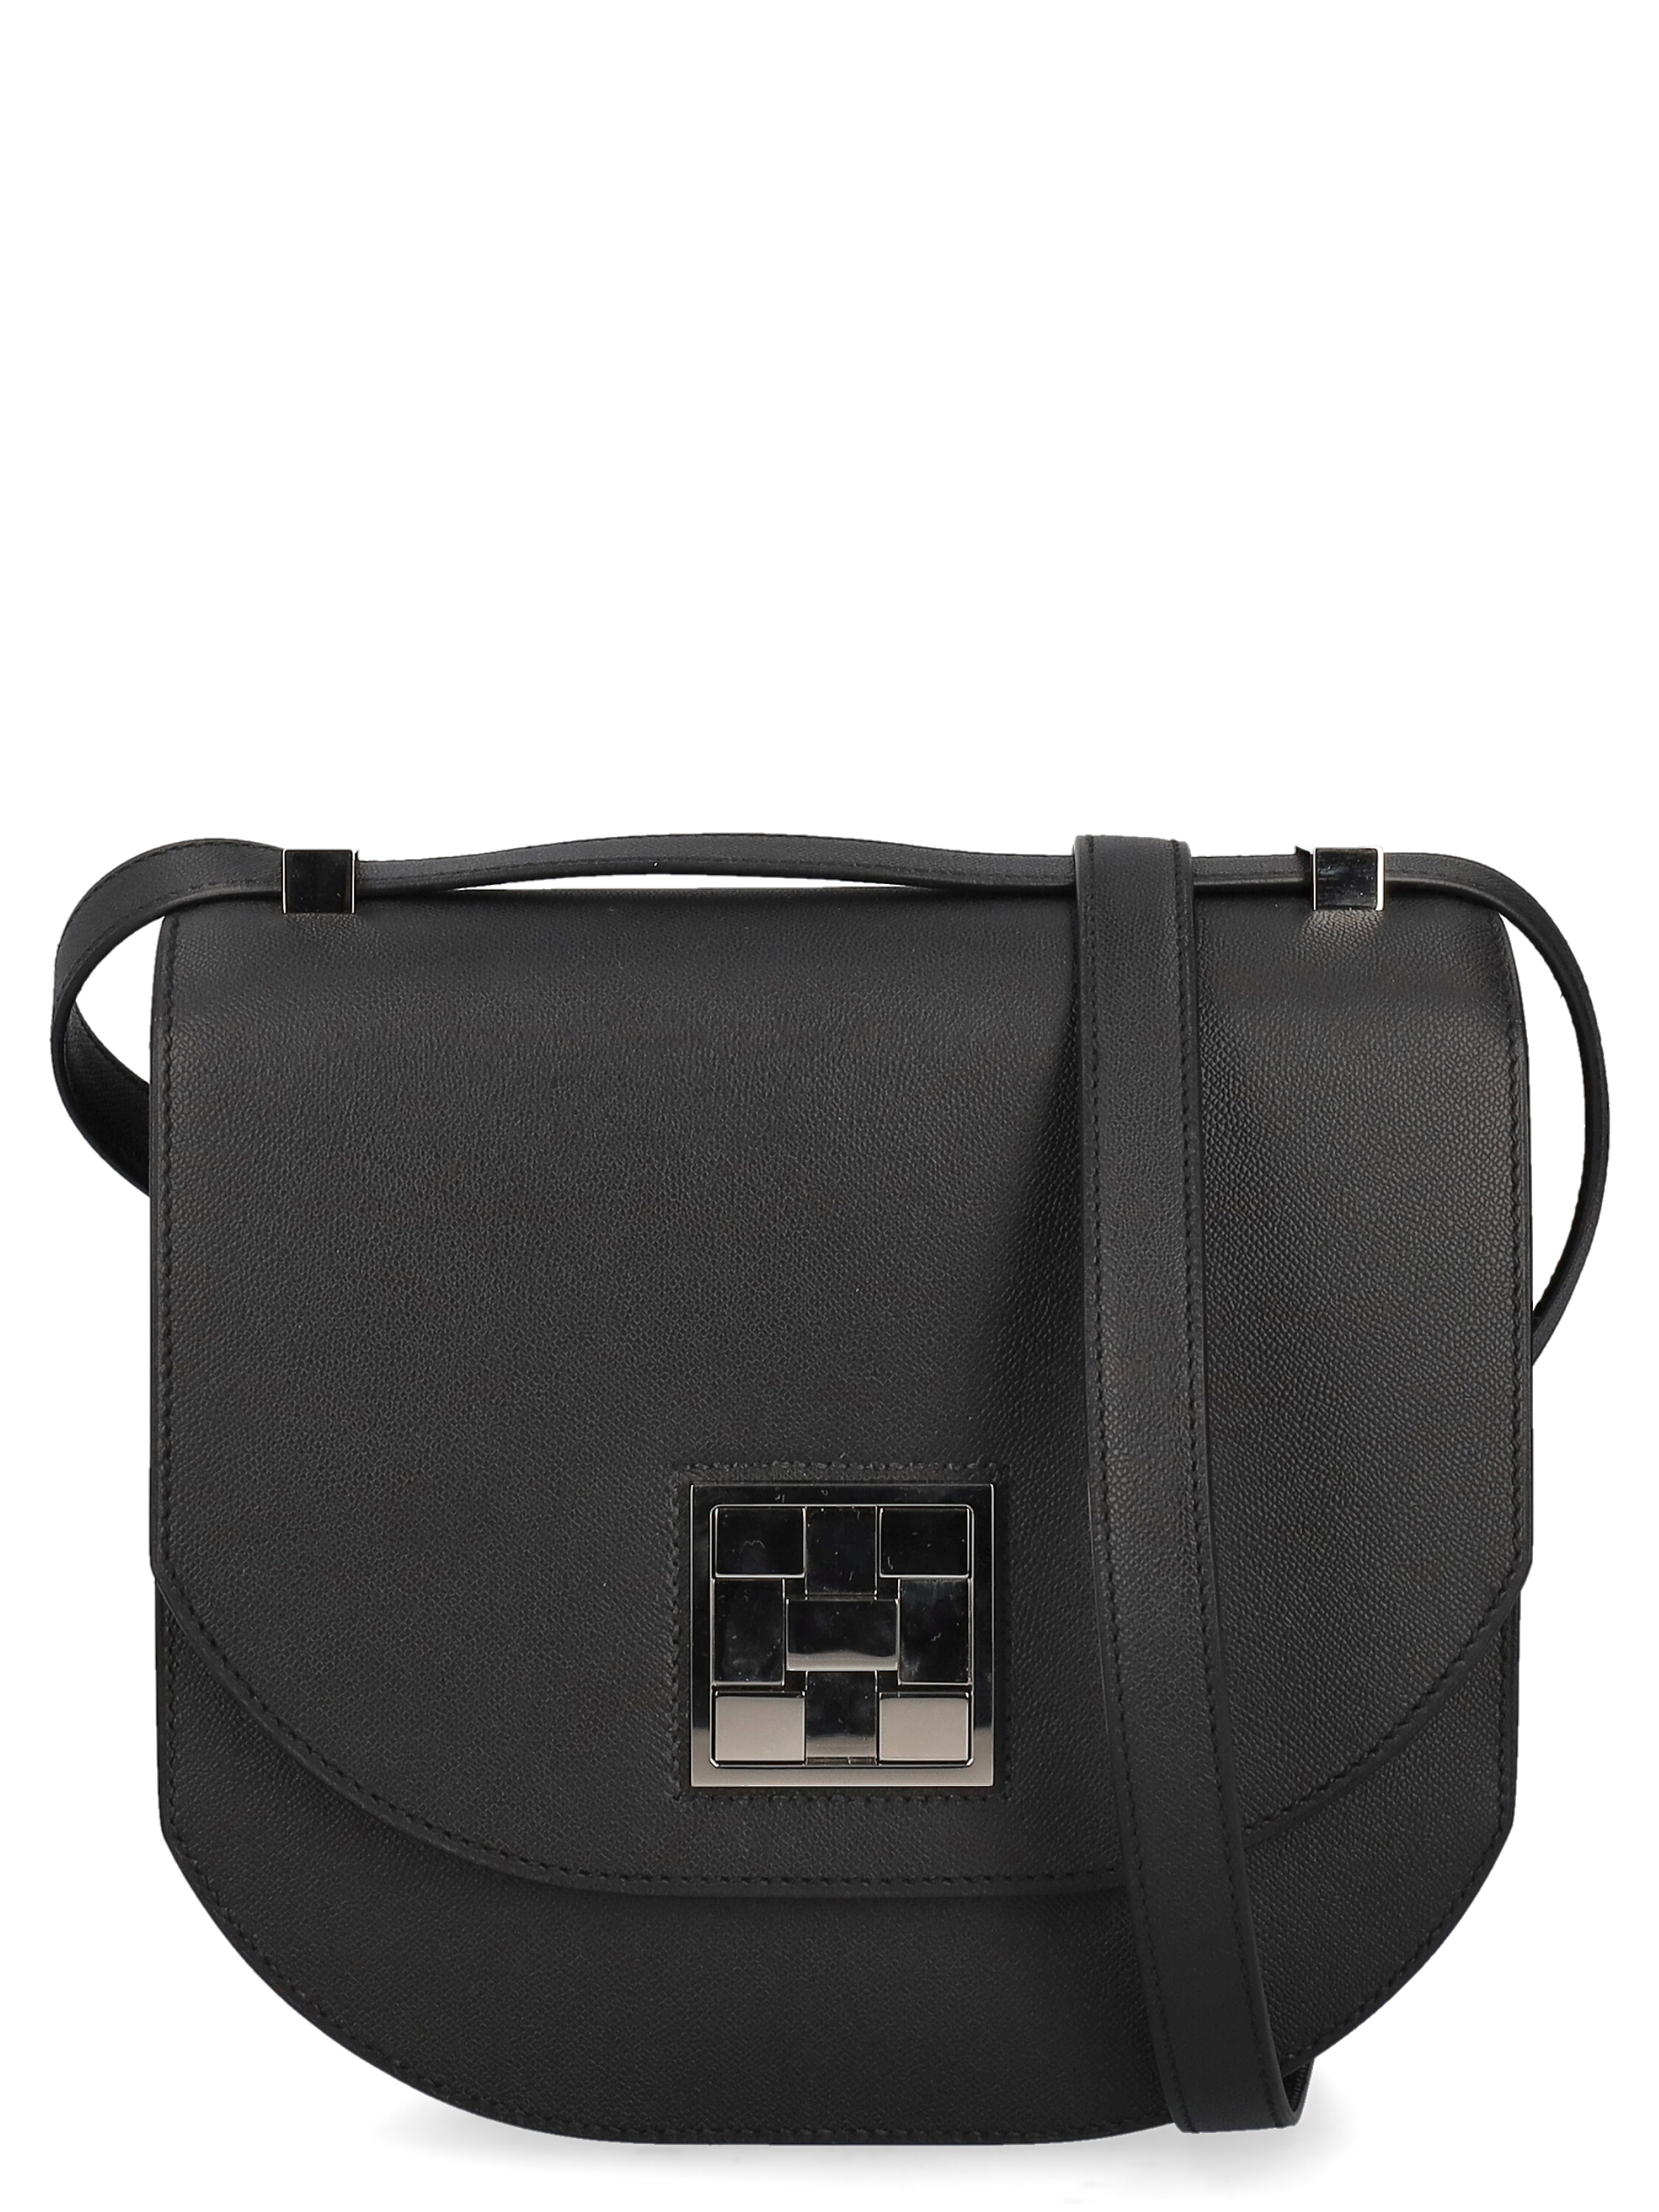 Pre-owned Hermes Women's Shoulder Bags - Hermès - In Black Leather